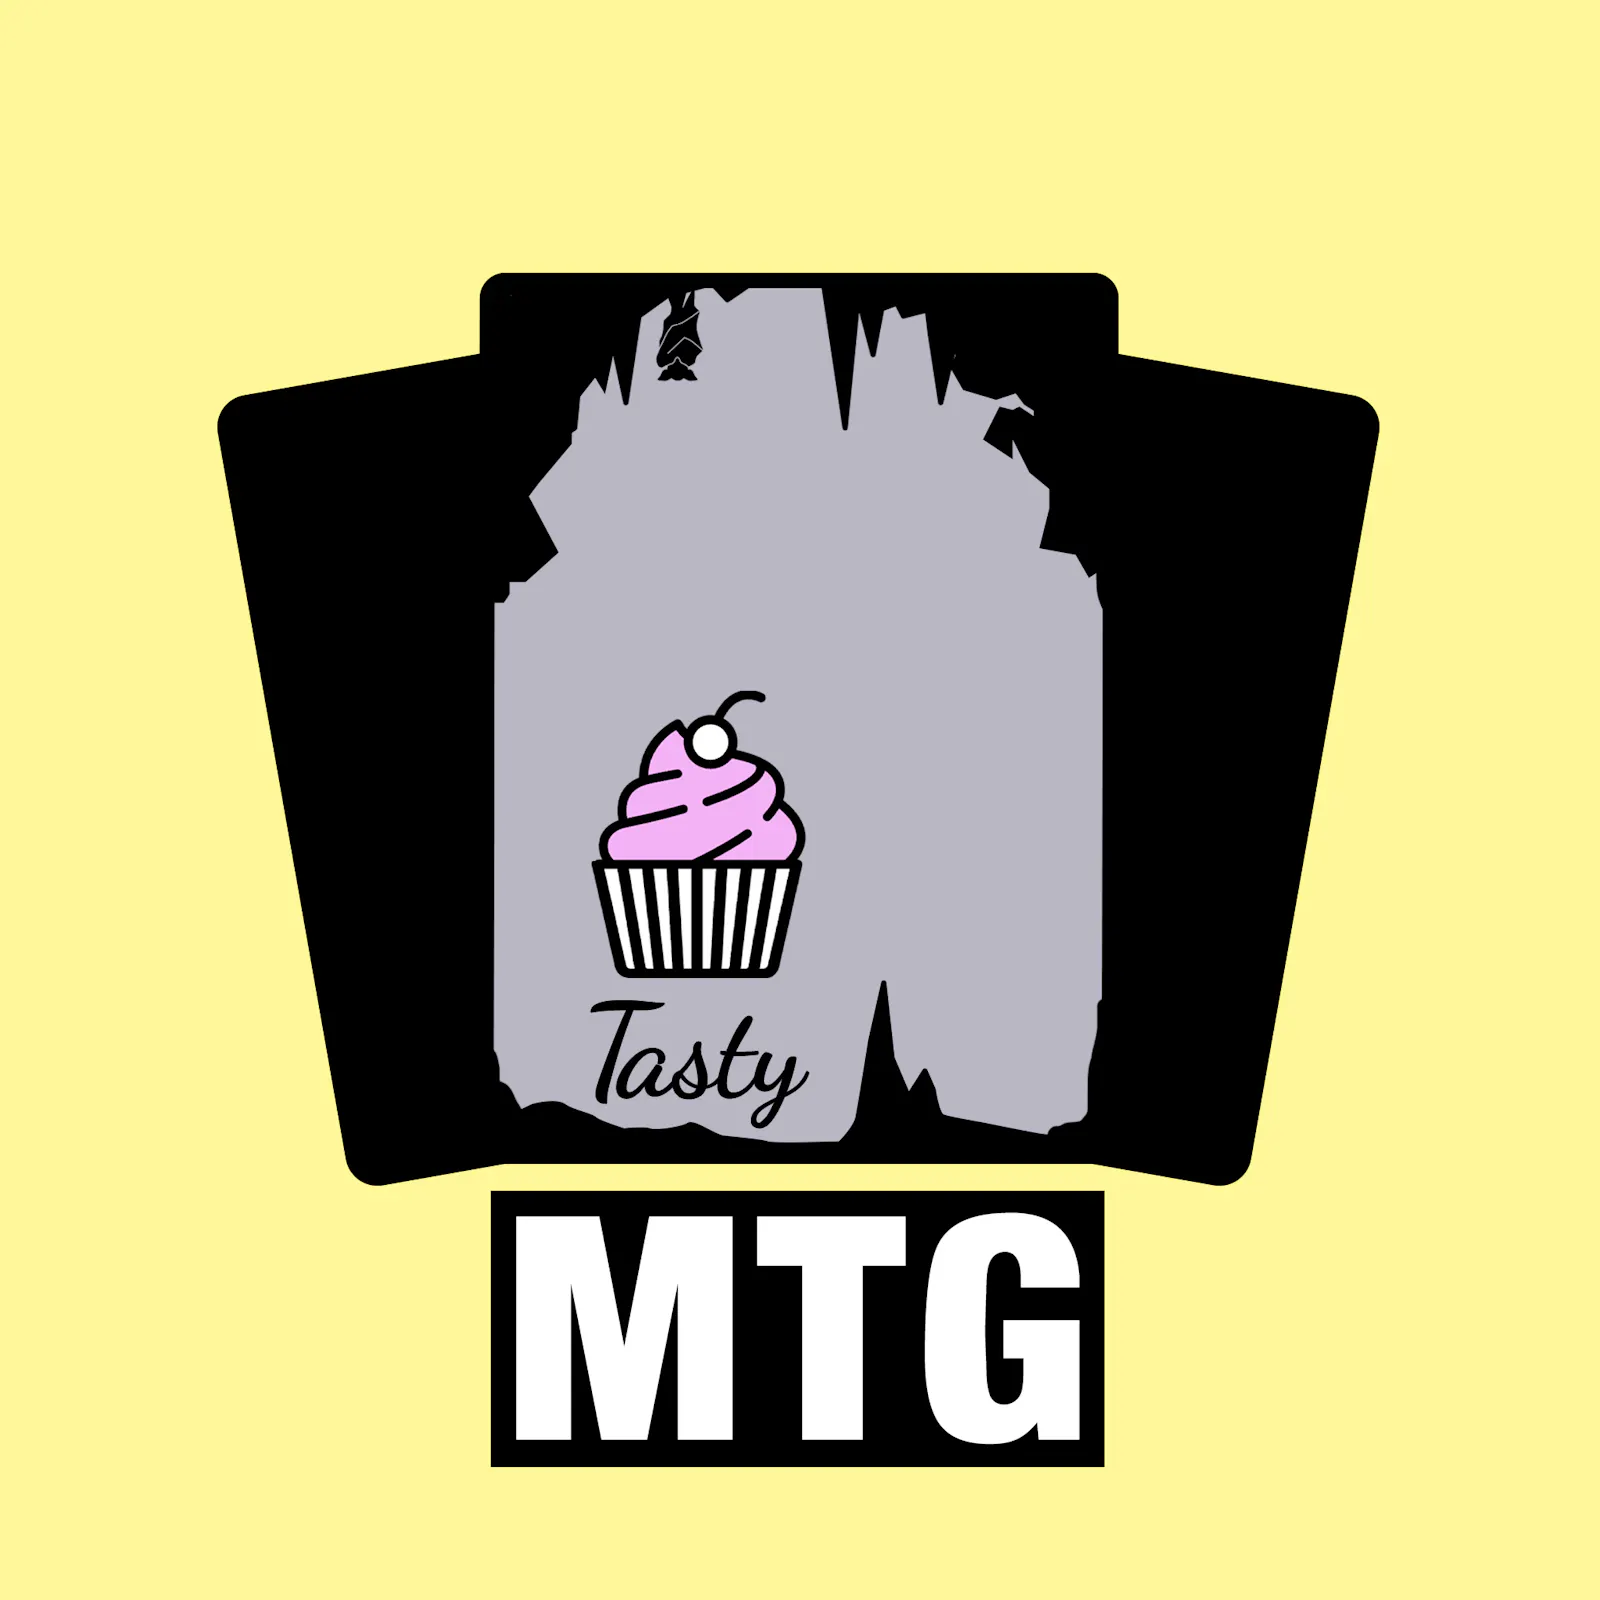 Das Cover zur aktuellen Folge: Der Tasty-MTG-Muffin sitzt allein in einer Höhle